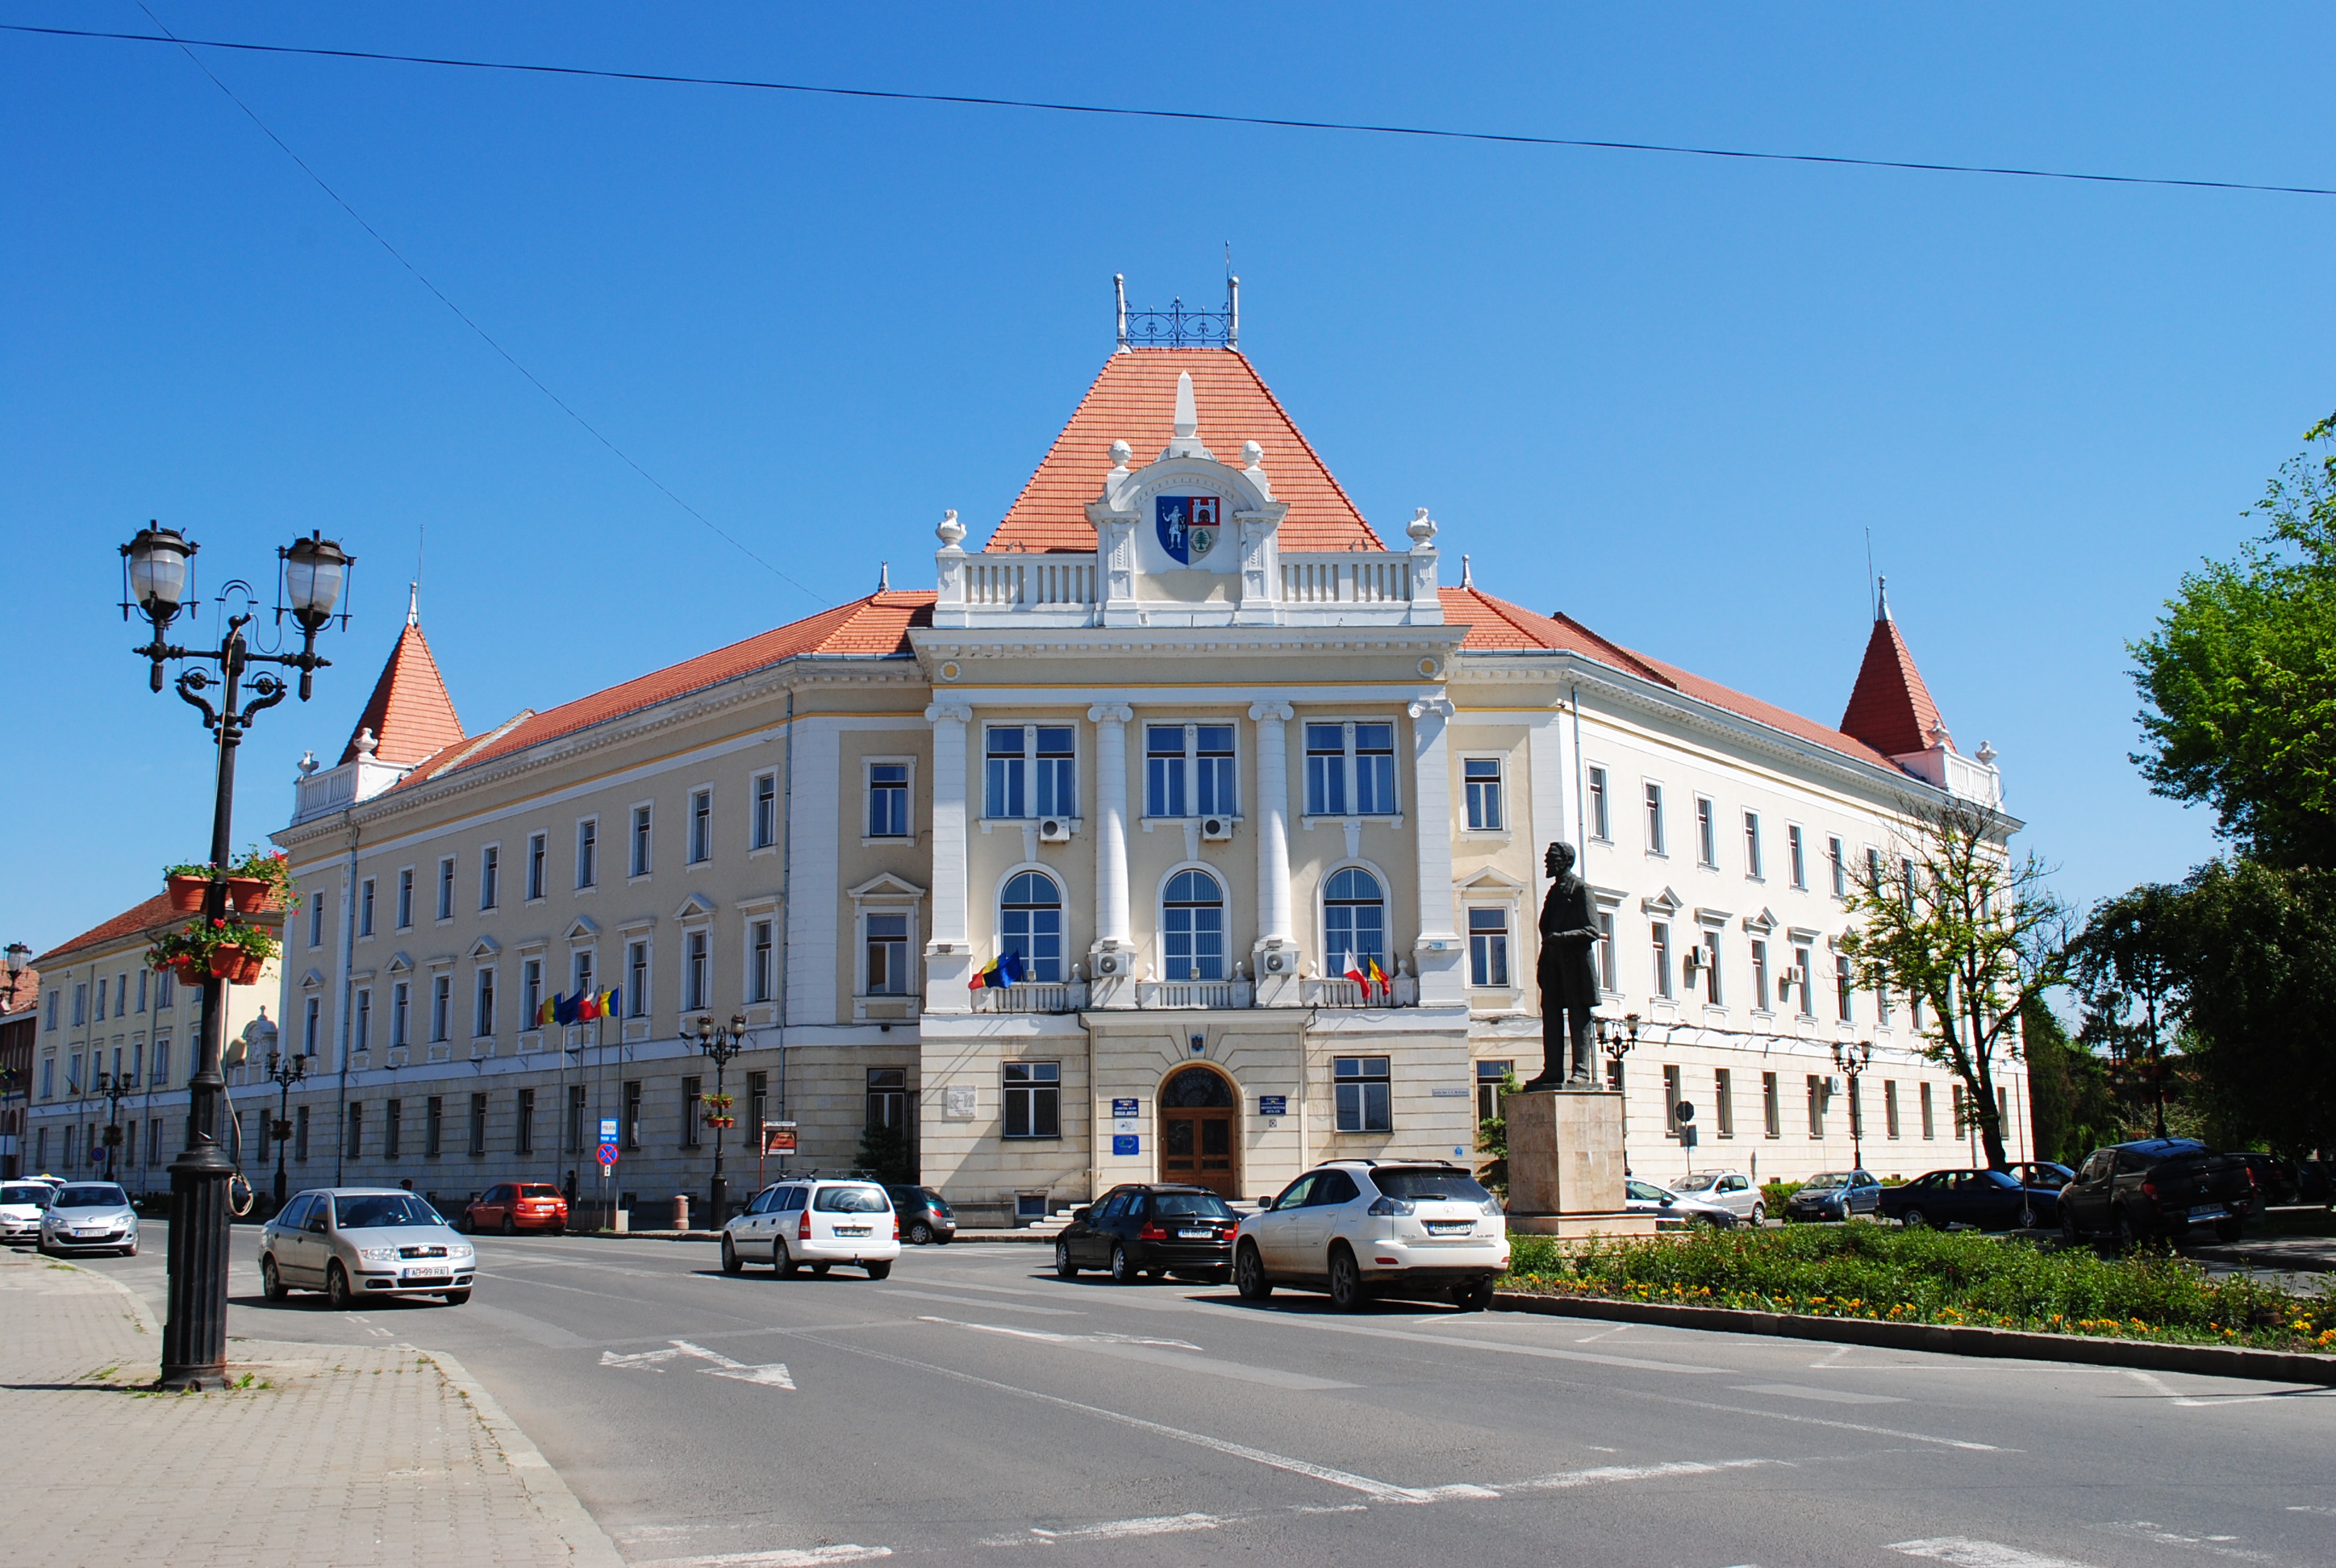  Alba Iulia, Romania skank